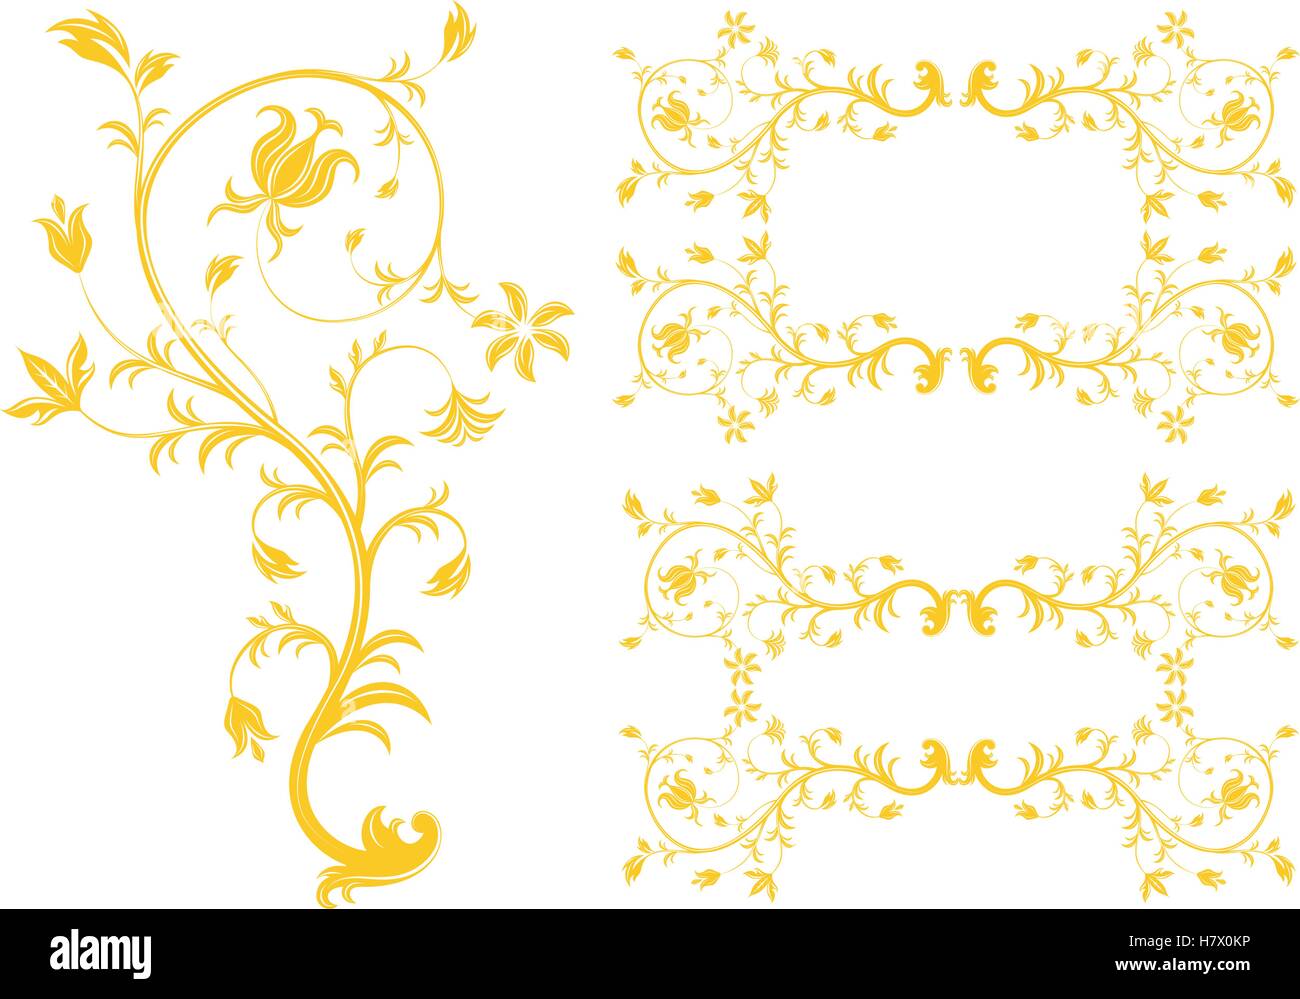 Golden floreali testurizzato cornici ornati, ornamenti decorativi, fiorisca e elementi di chiocciola Illustrazione Vettoriale